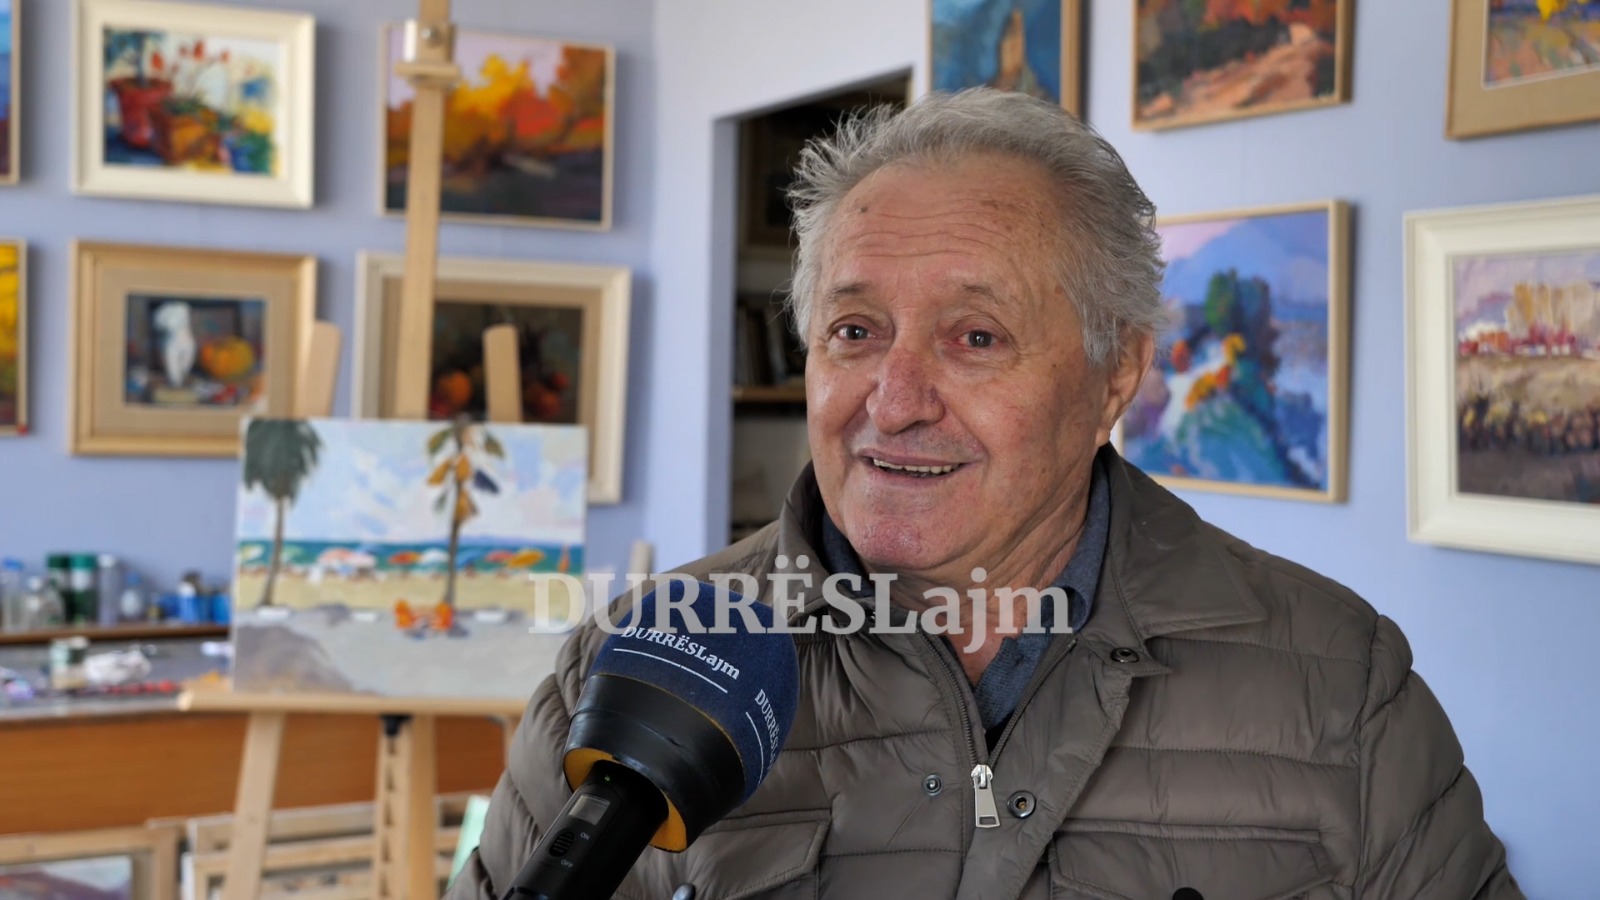 E kuqja e Çaush Vathit dhe një galeri arti në zemër të Durrësit (VIDEO)